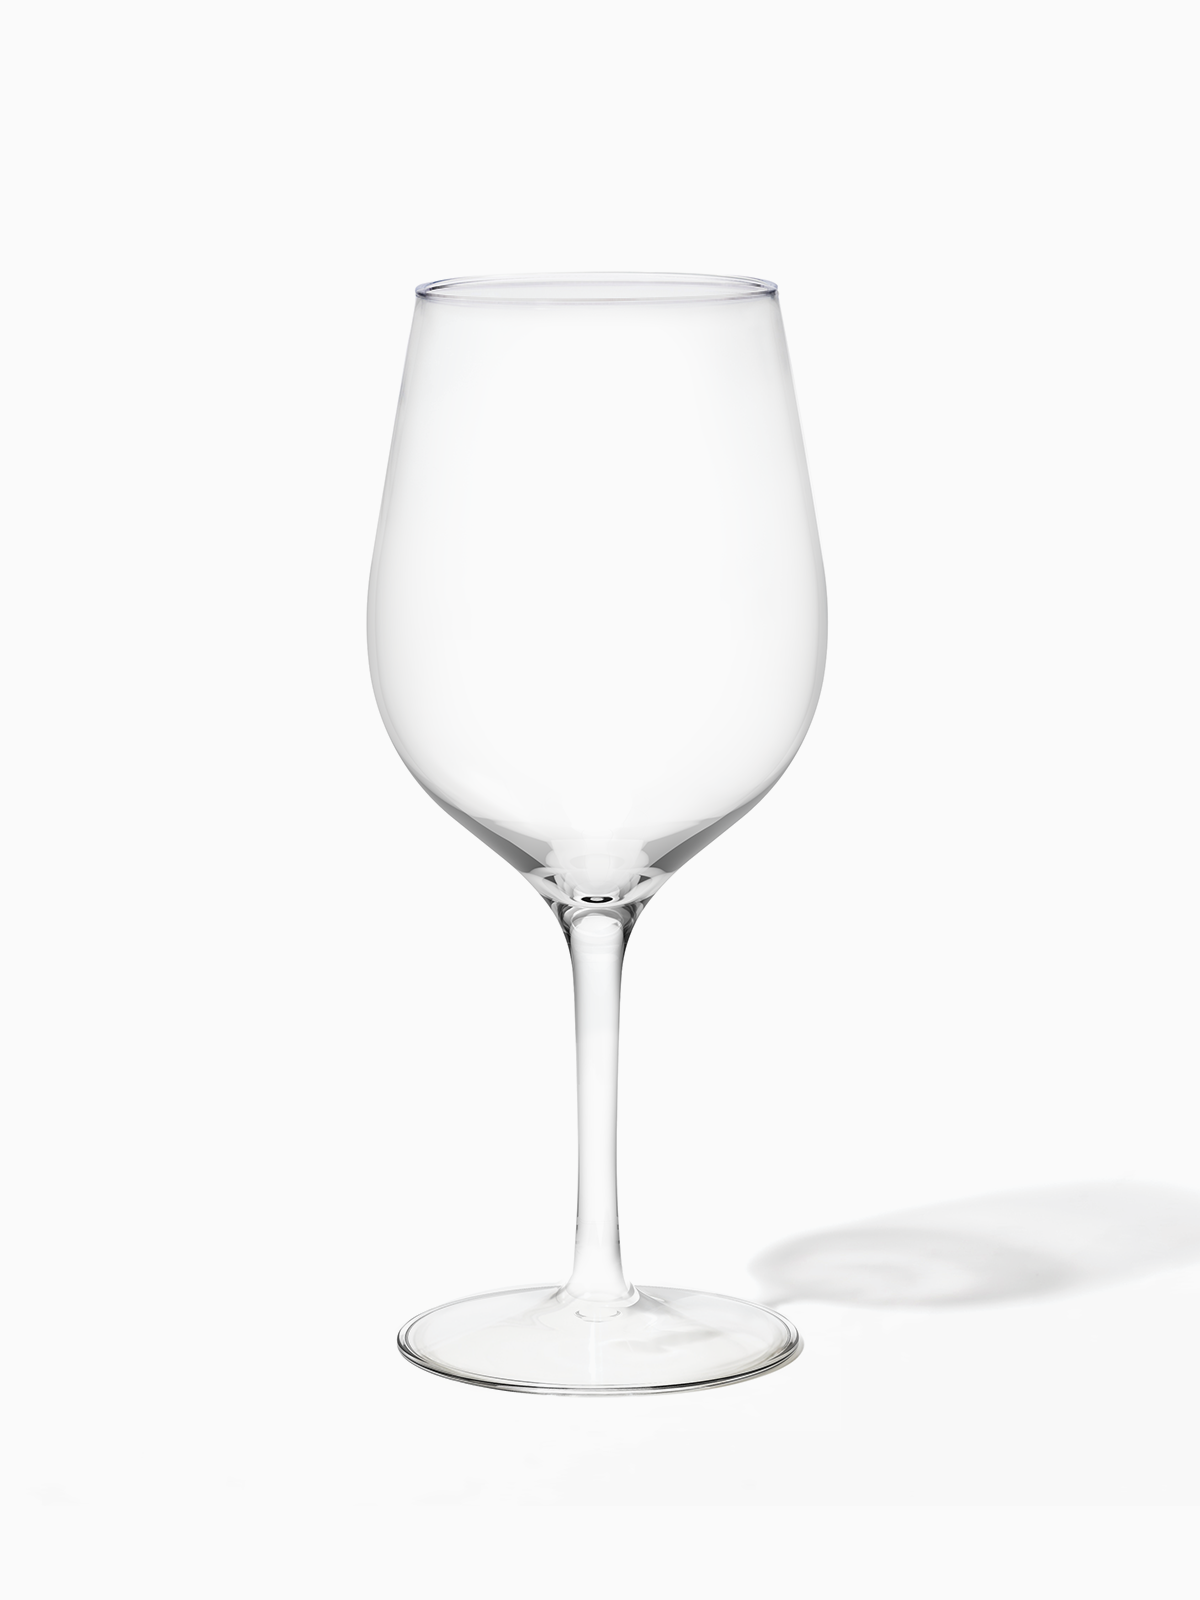 Glitz wine glass - single  Official Girlguiding shop